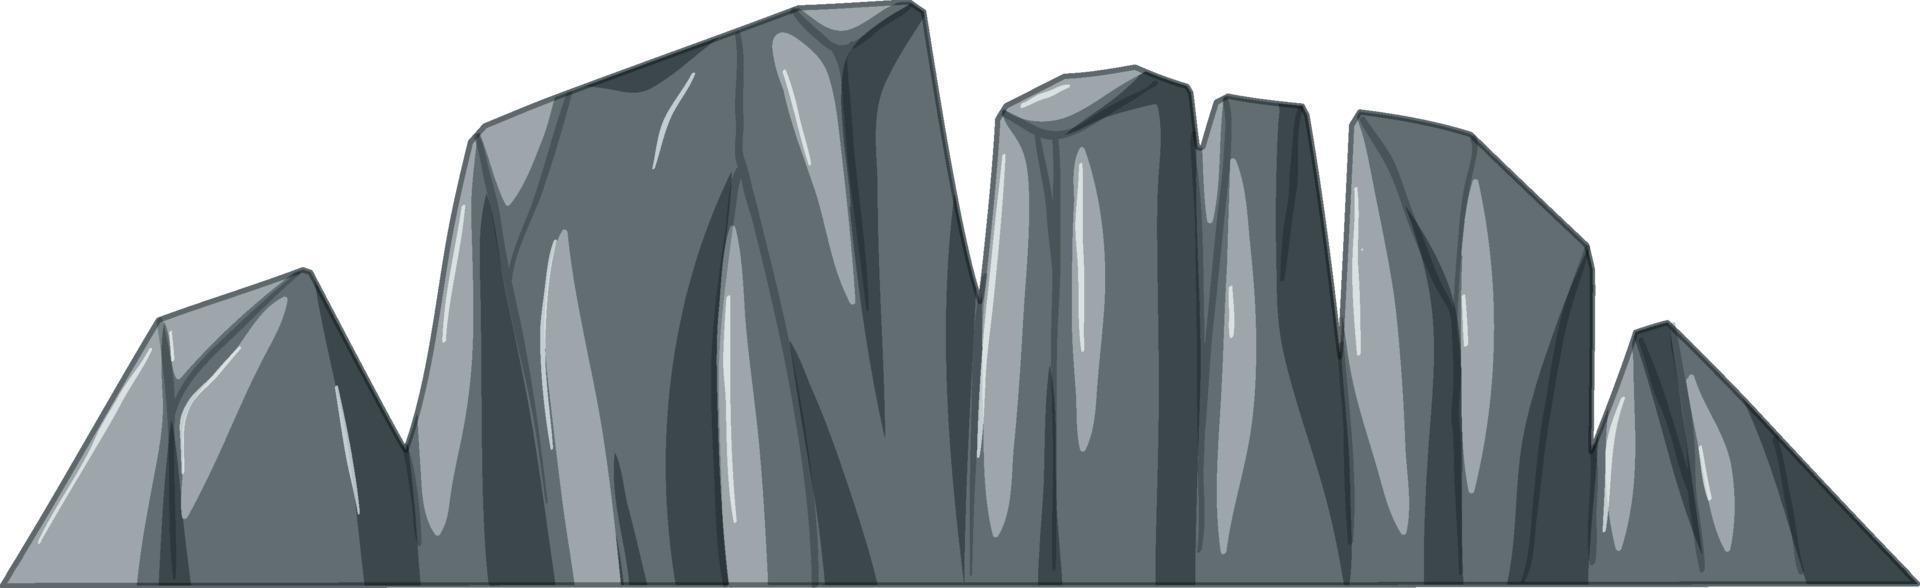 vulcano di montagna di pietra in stile cartone animato vettore